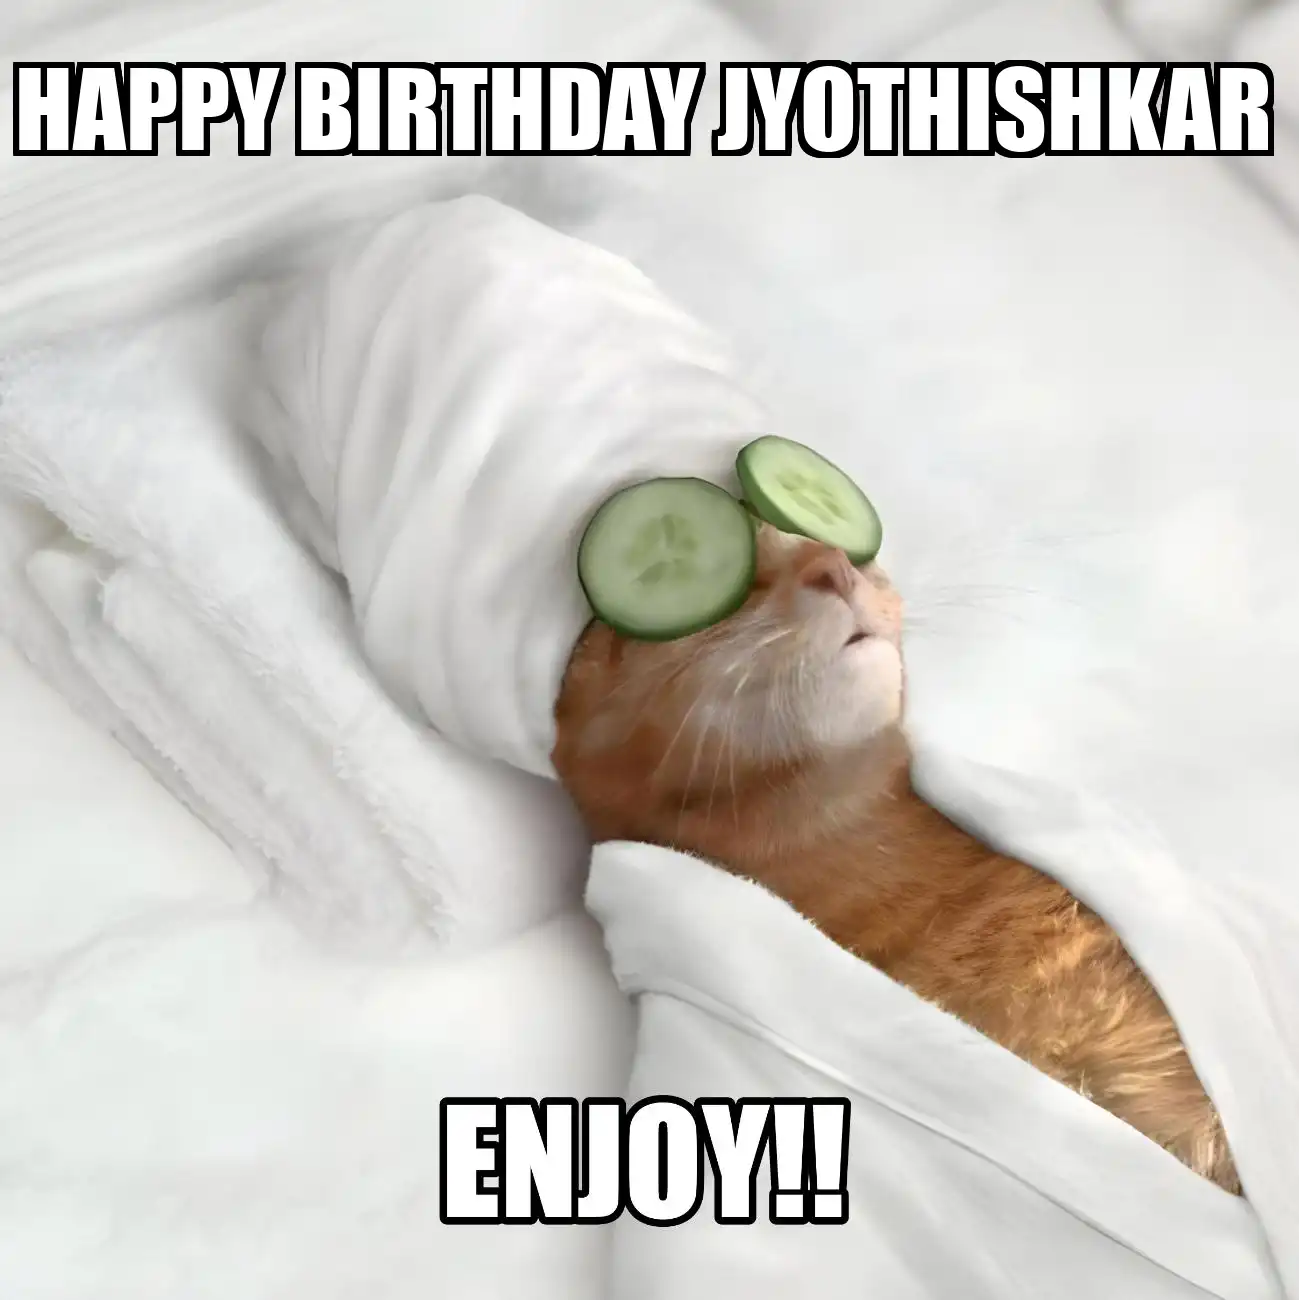 Happy Birthday Jyothishkar Enjoy Cat Meme